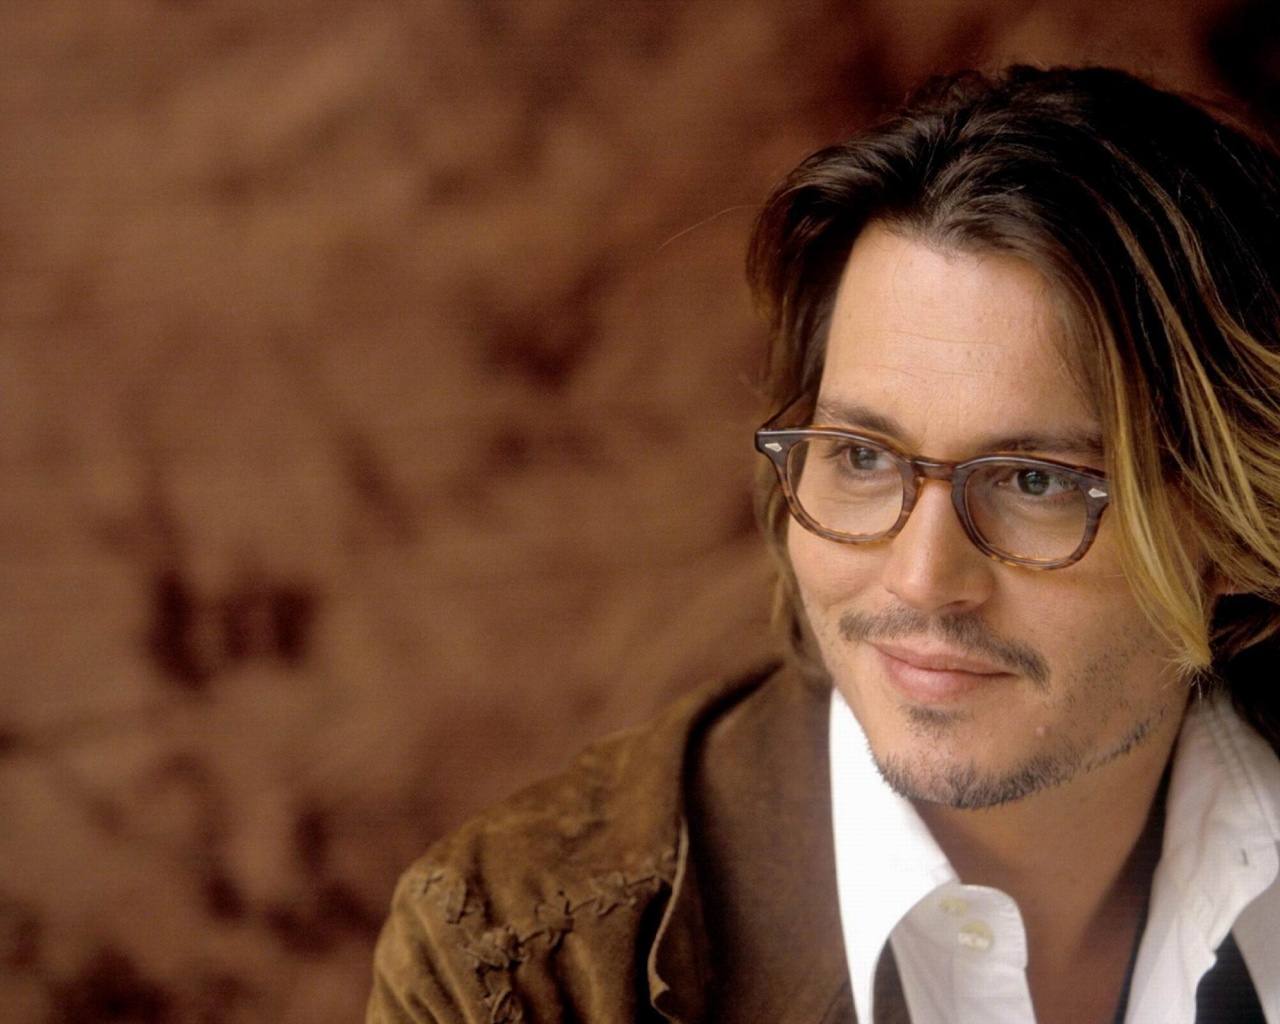 Johnny Depp Actor Celebrity